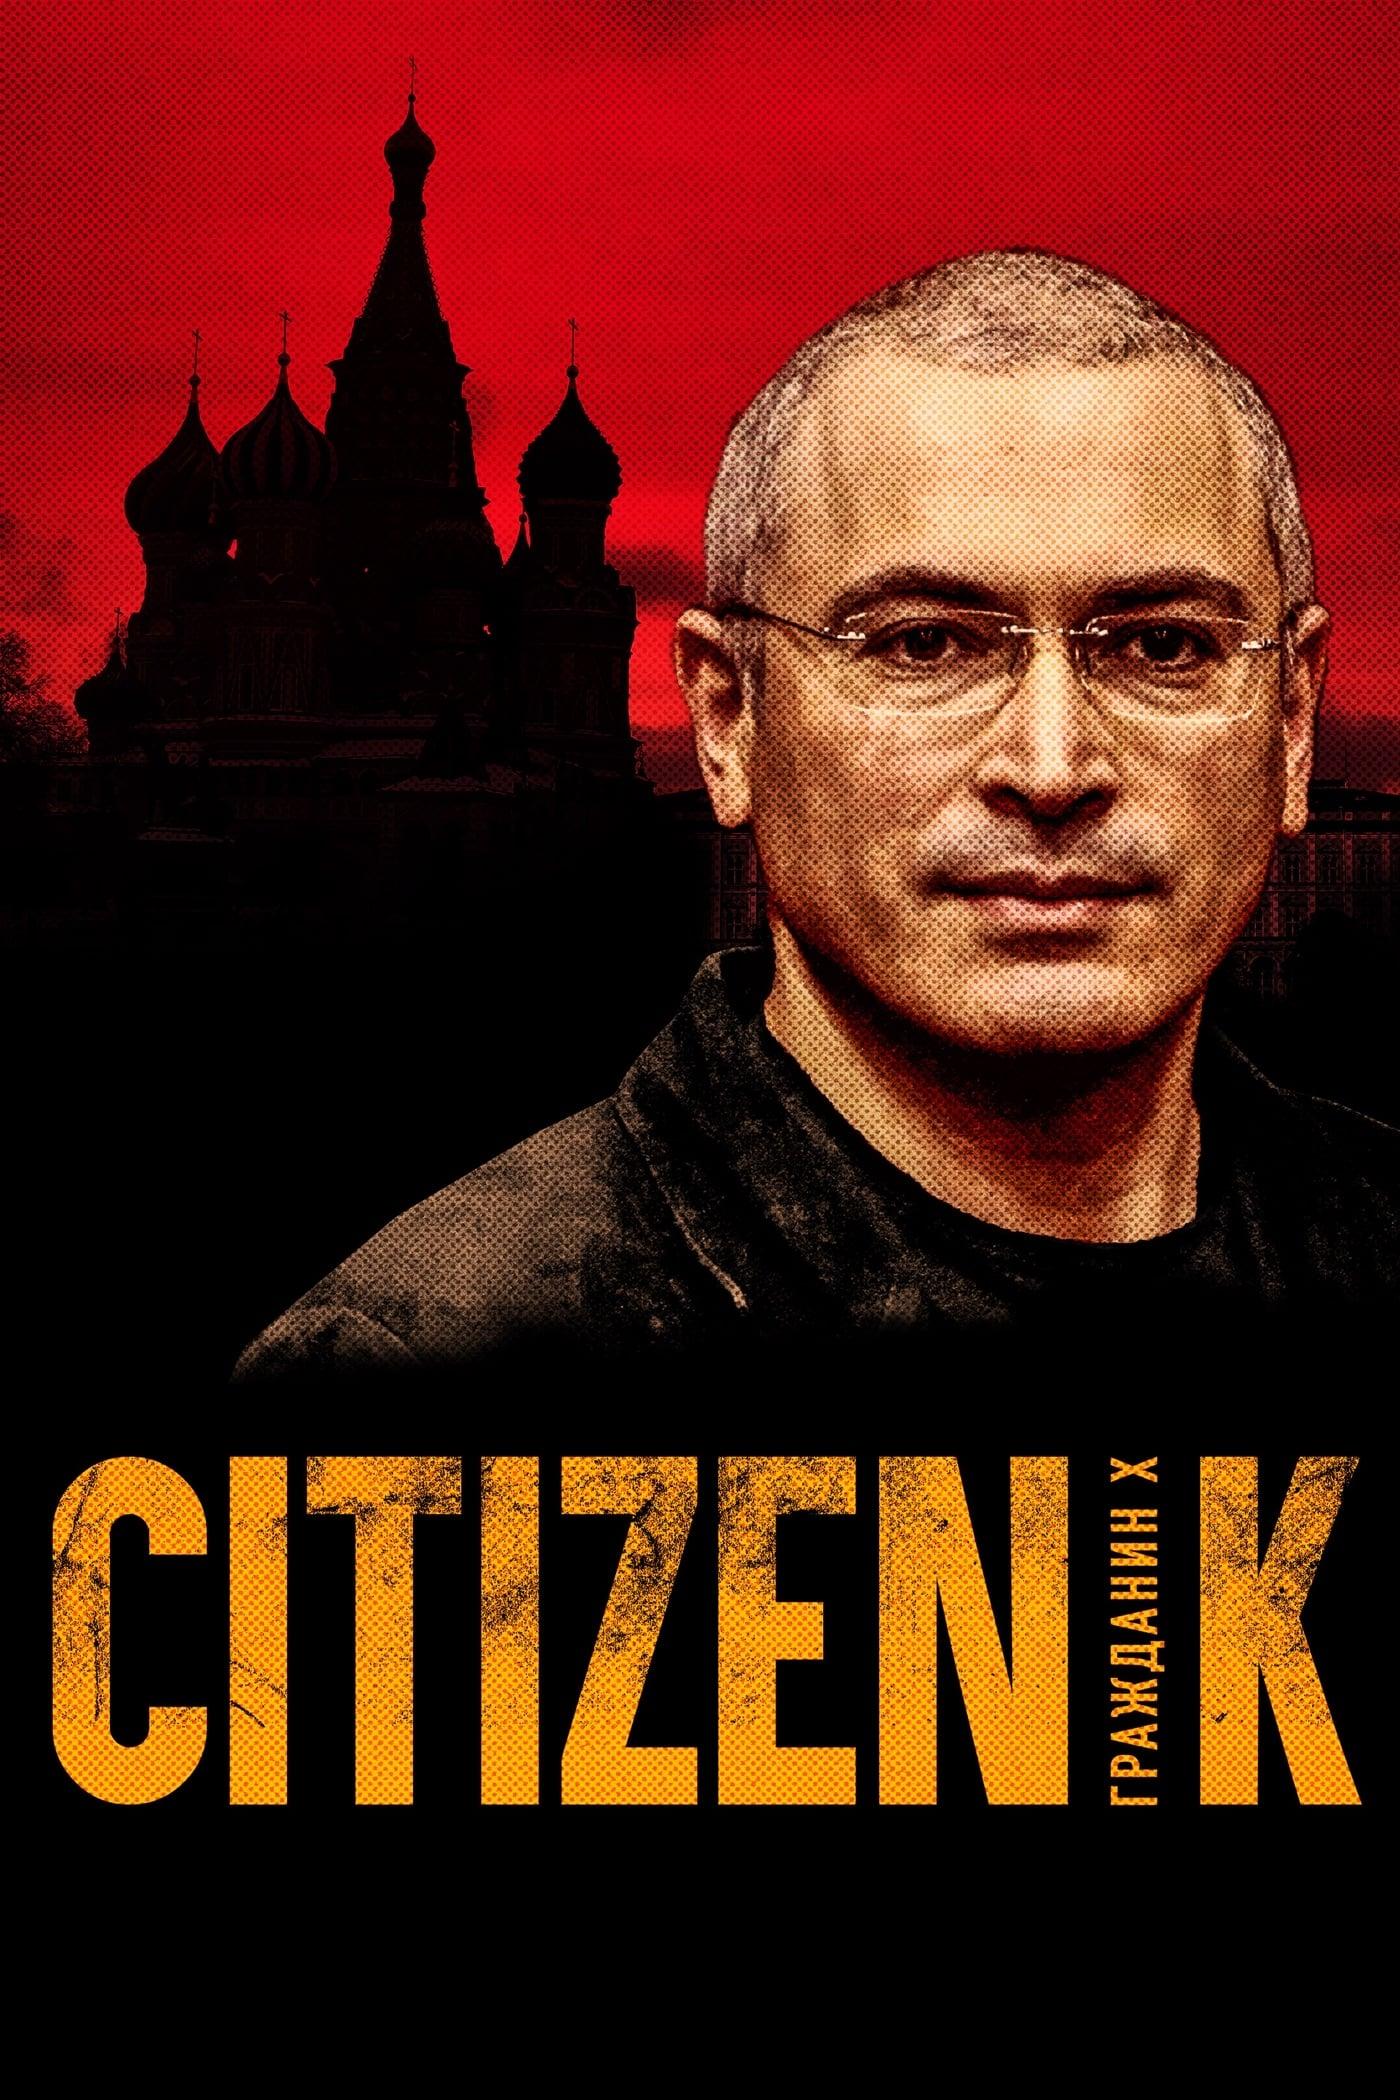 Citizen K poster